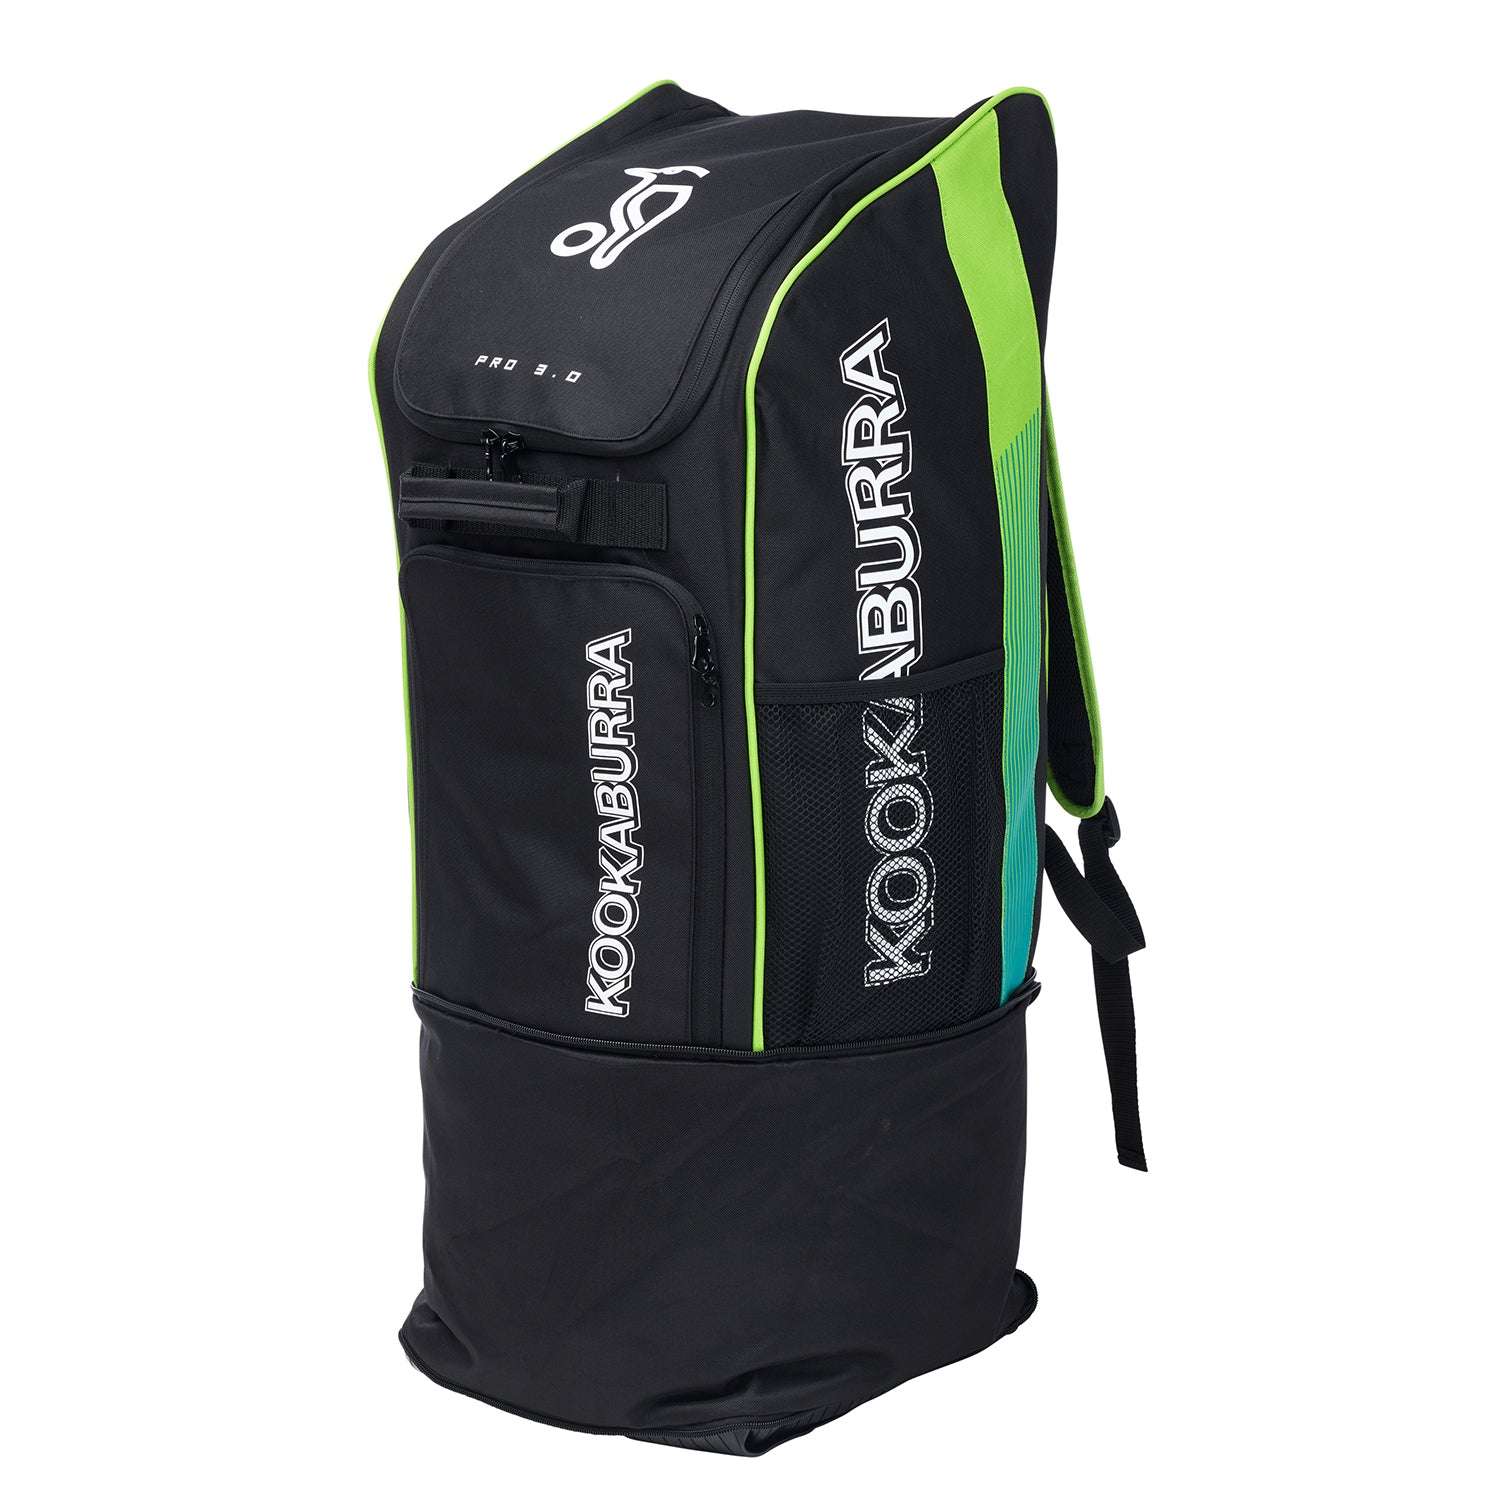 Kookaburra Pro 3.0 Cricket Duffle Bag